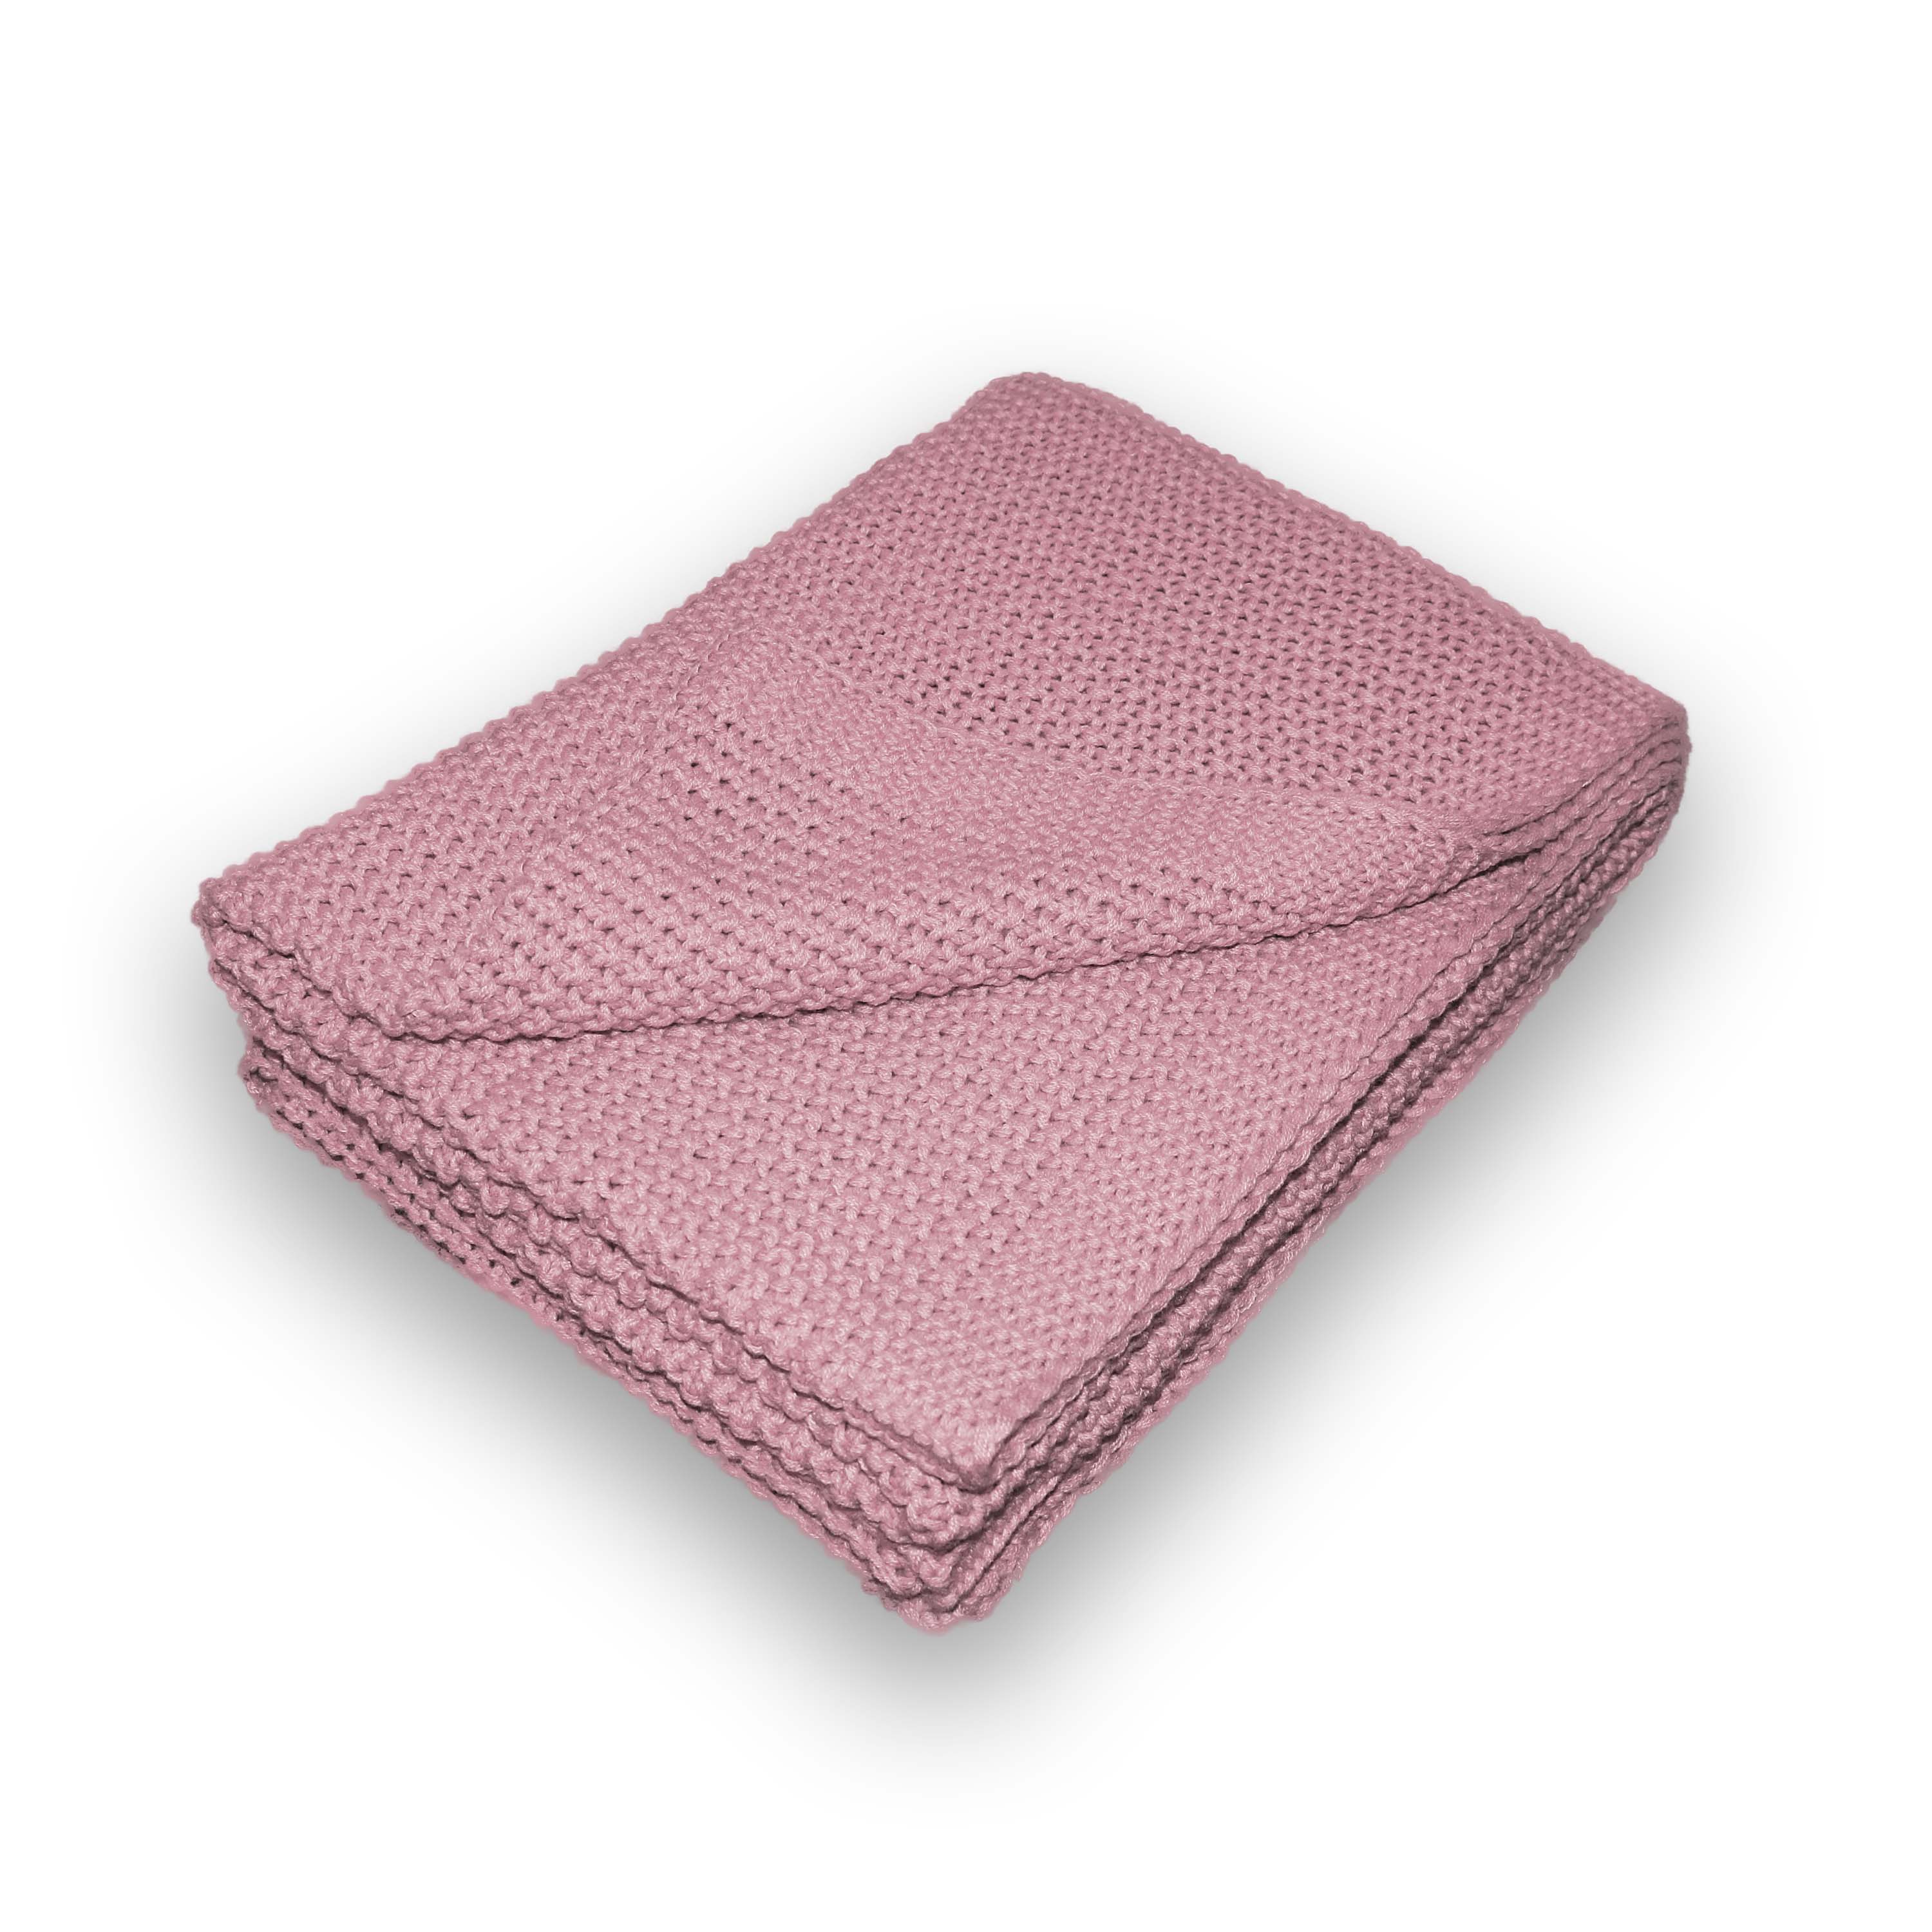 Traumhaft gut schlafen Strickdecke – Kuscheldecke in verschiedenen Farben, 100% Polyester